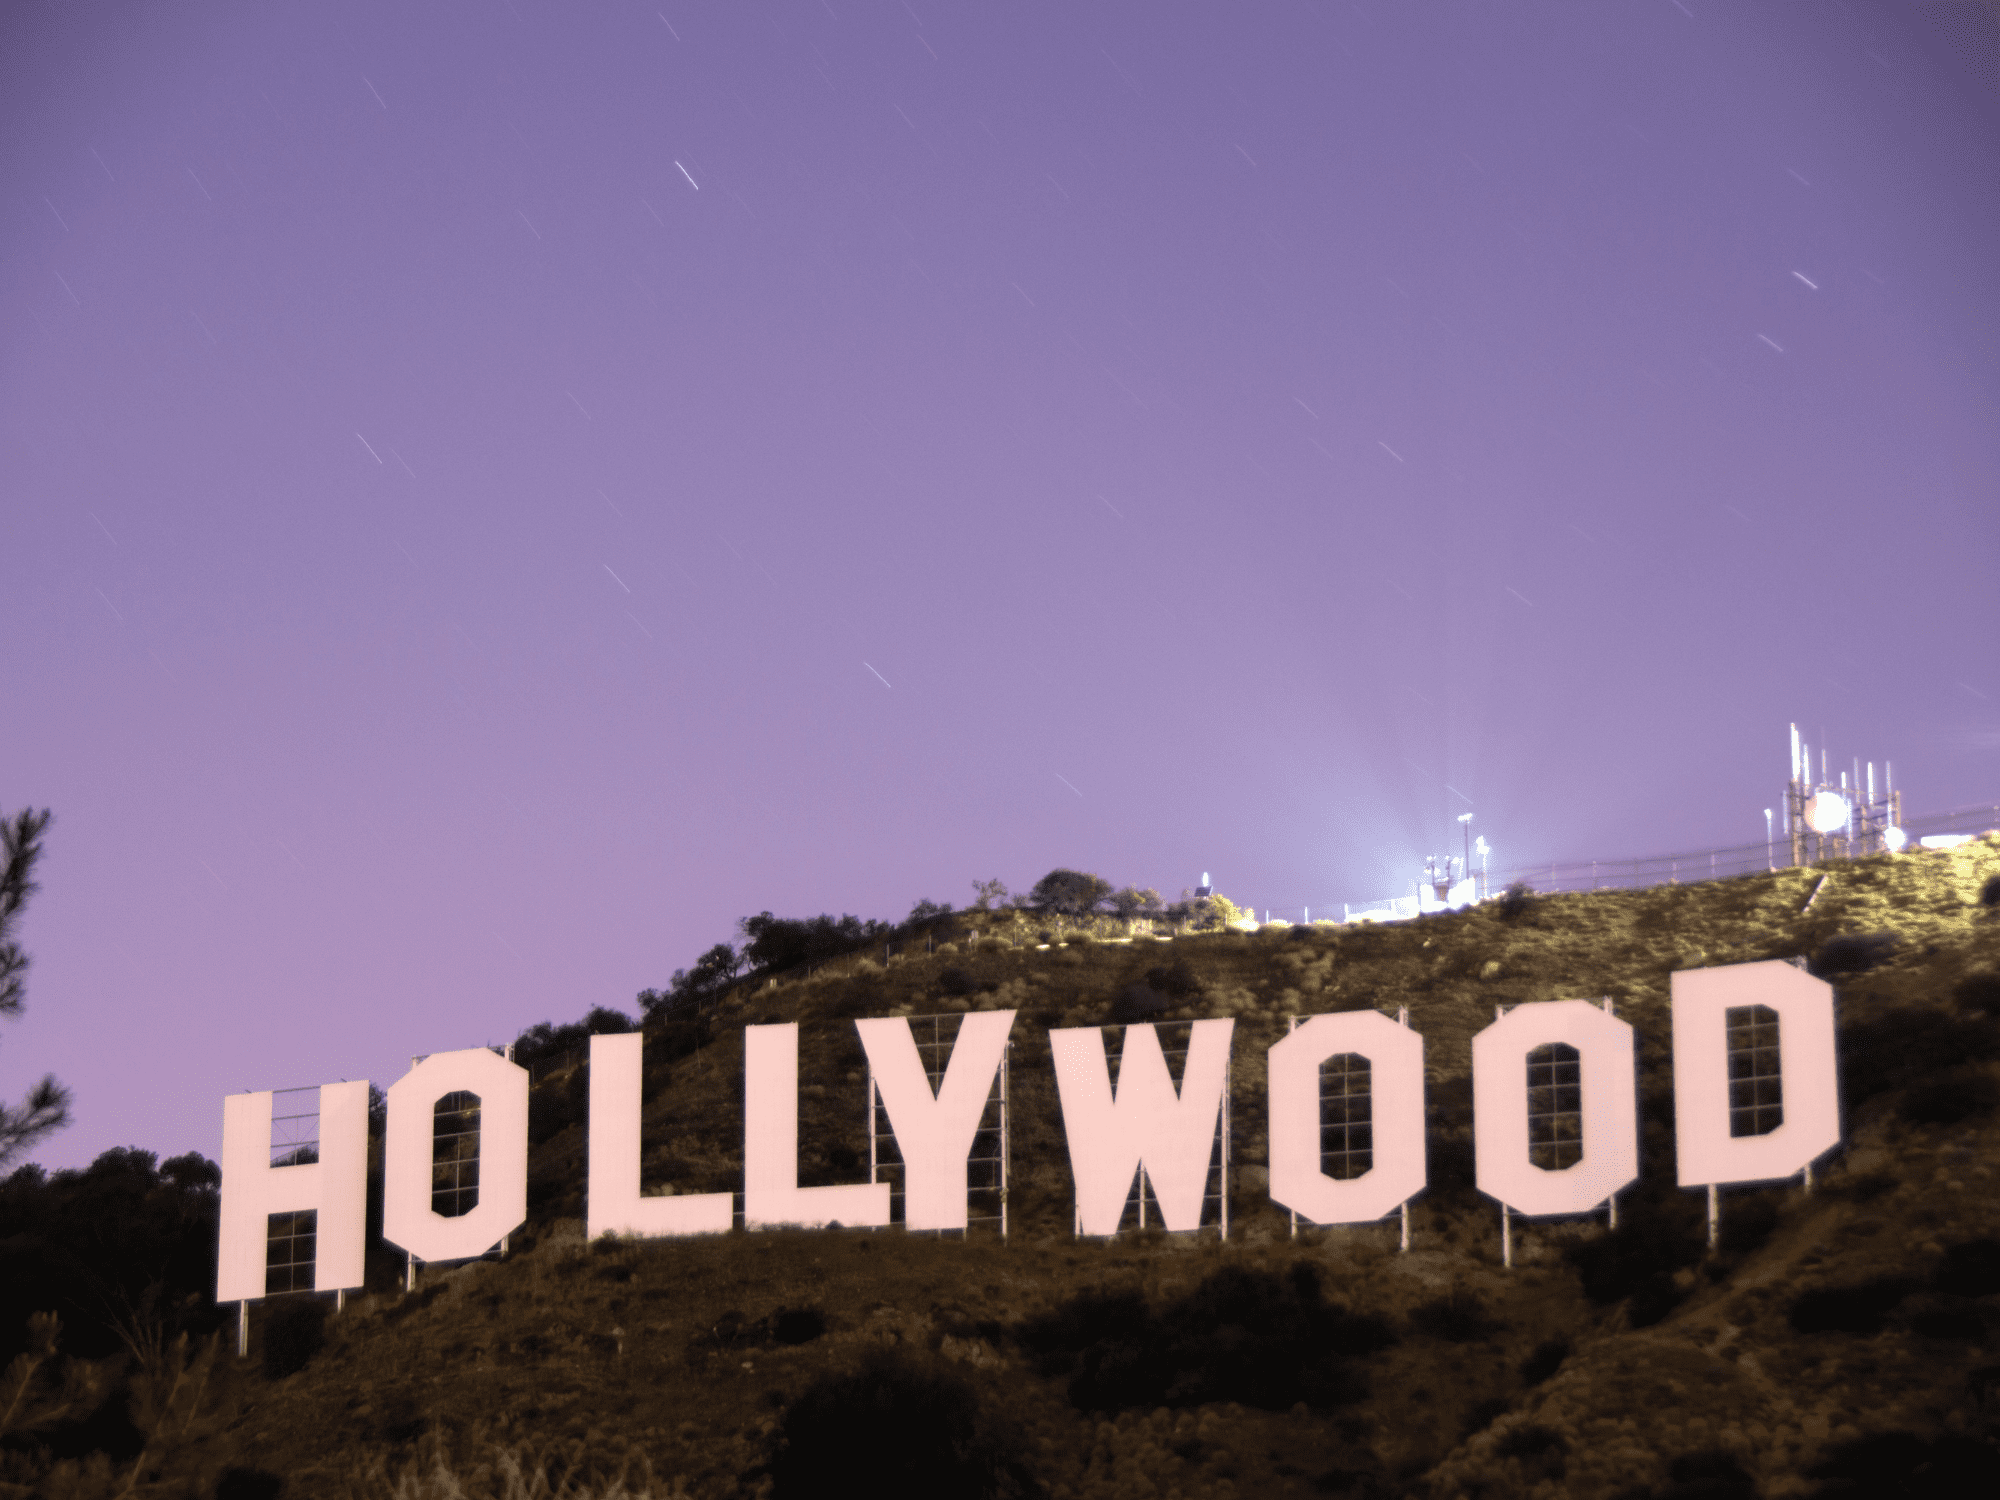 Zwischen Hollywood-Casting und Freizeitbier – über das richtige Mass der Selbstvermarktung im Interview